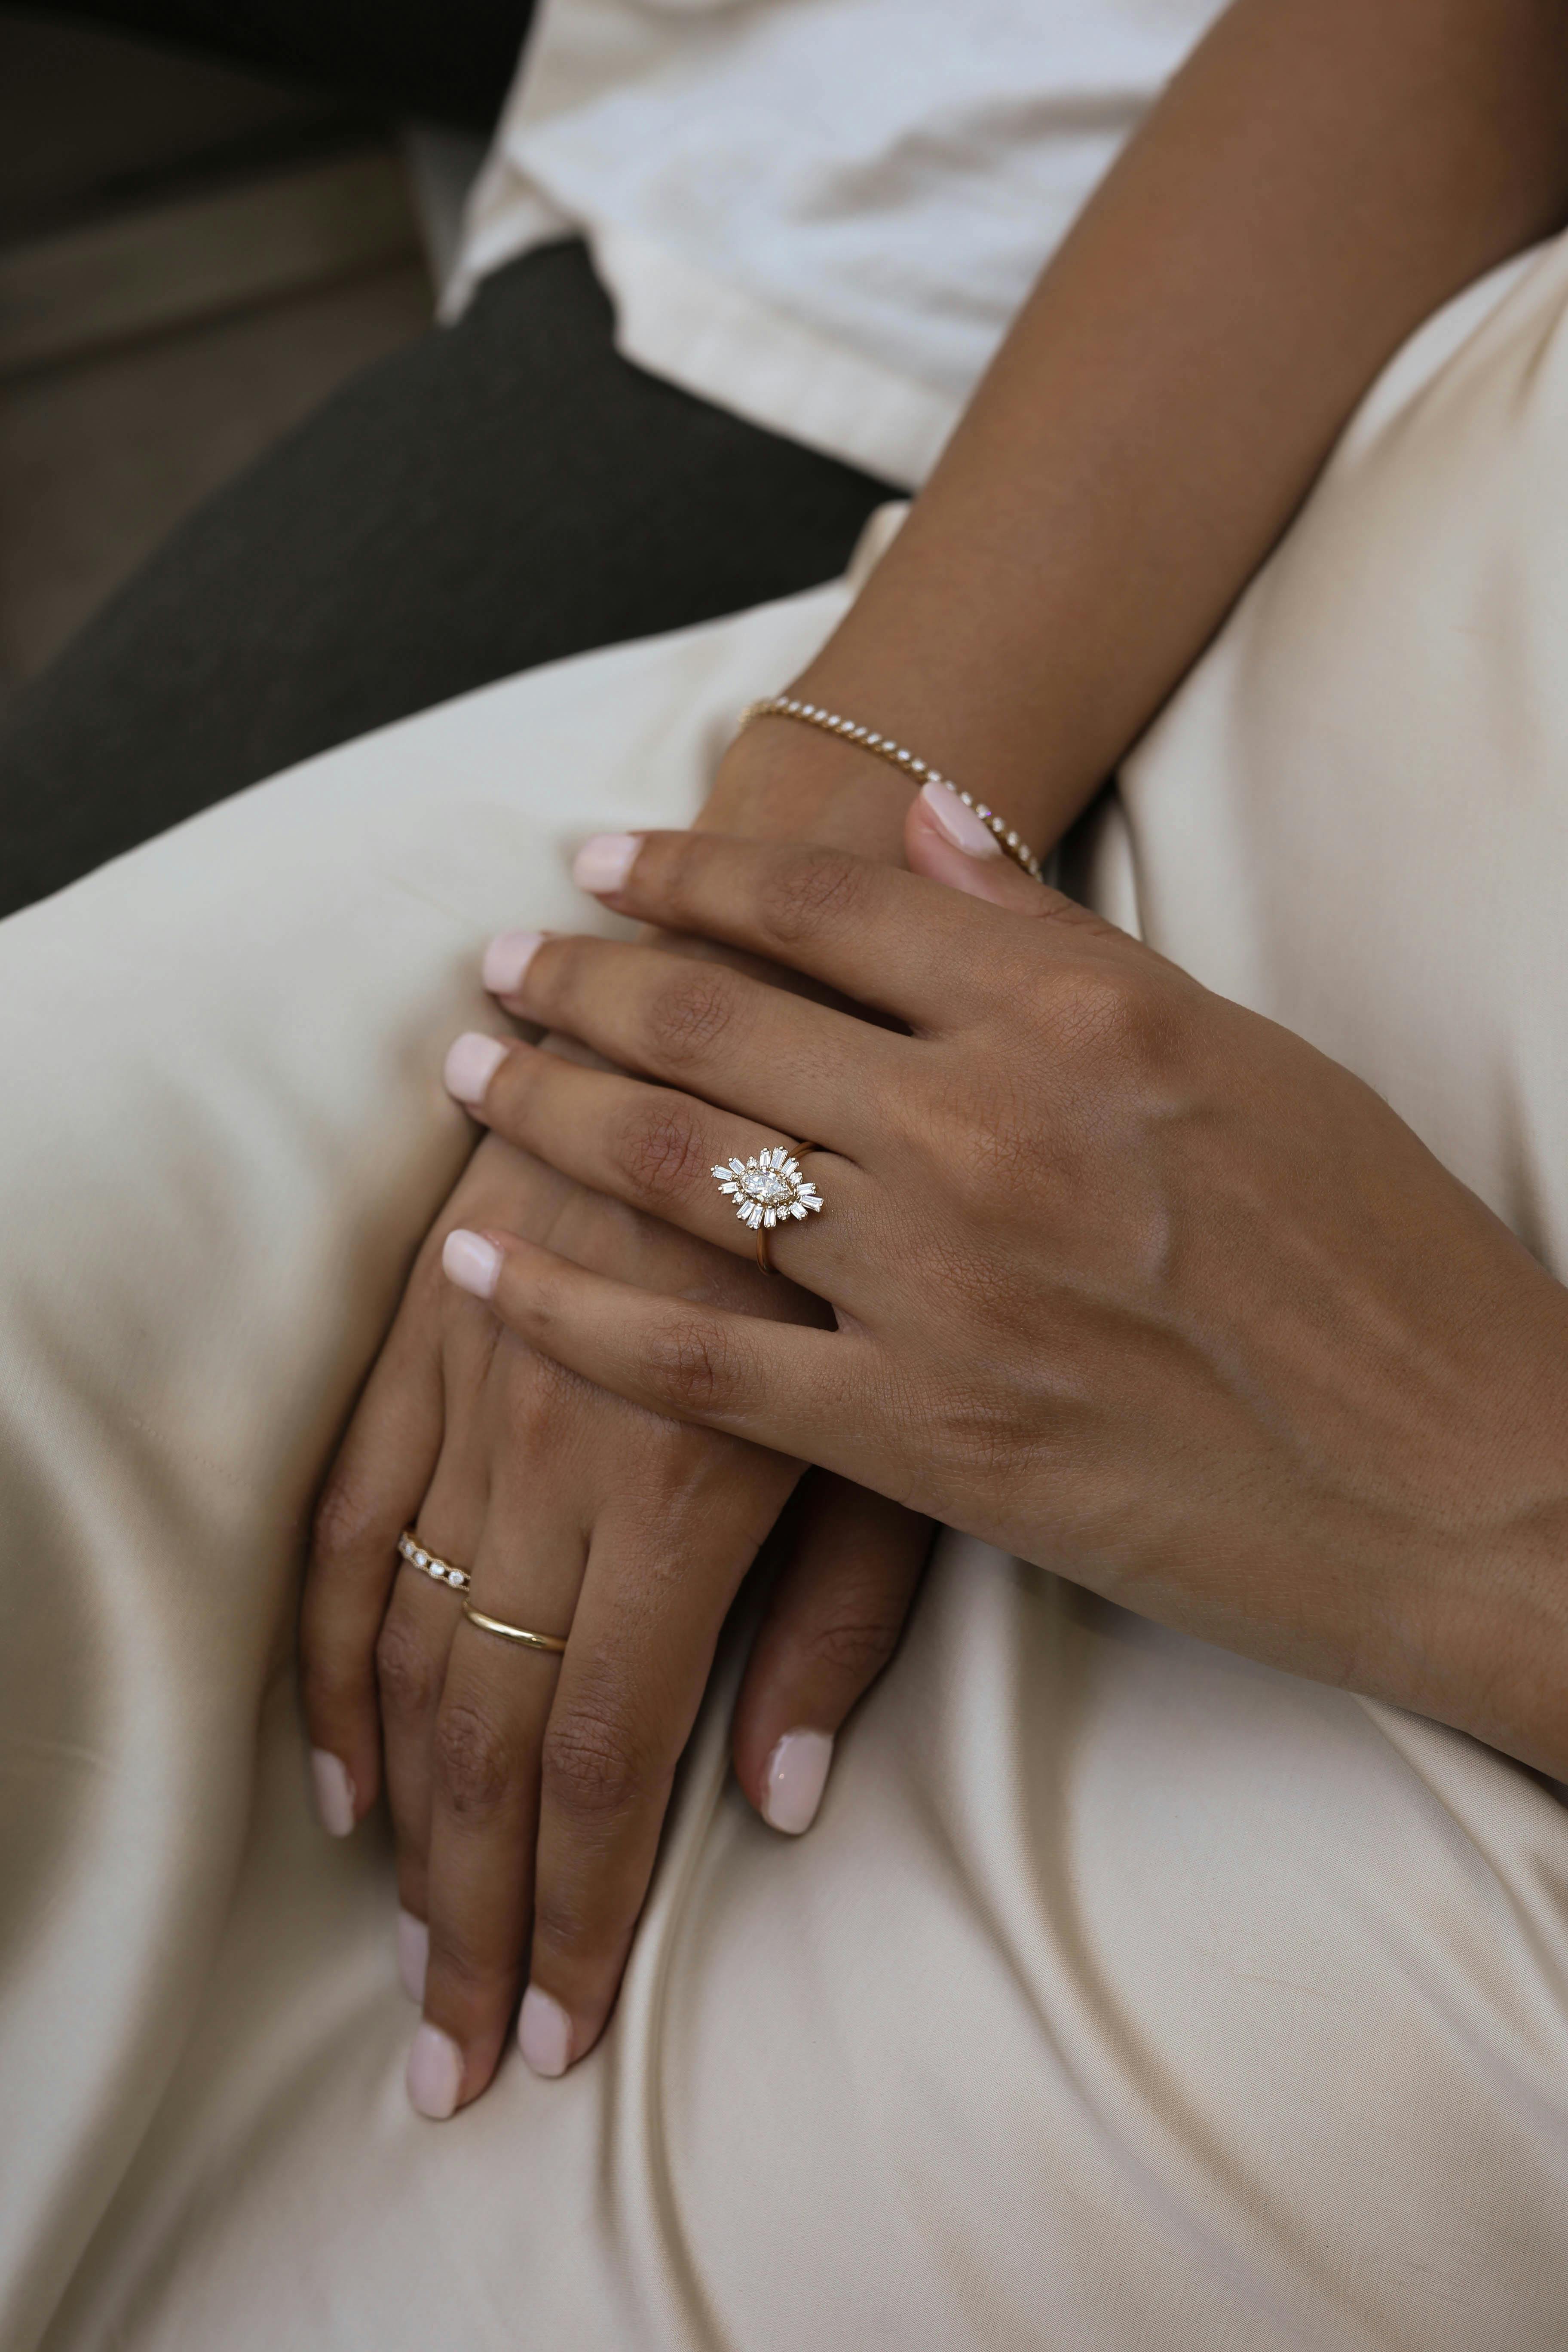 A beautiful diamond engagement ring